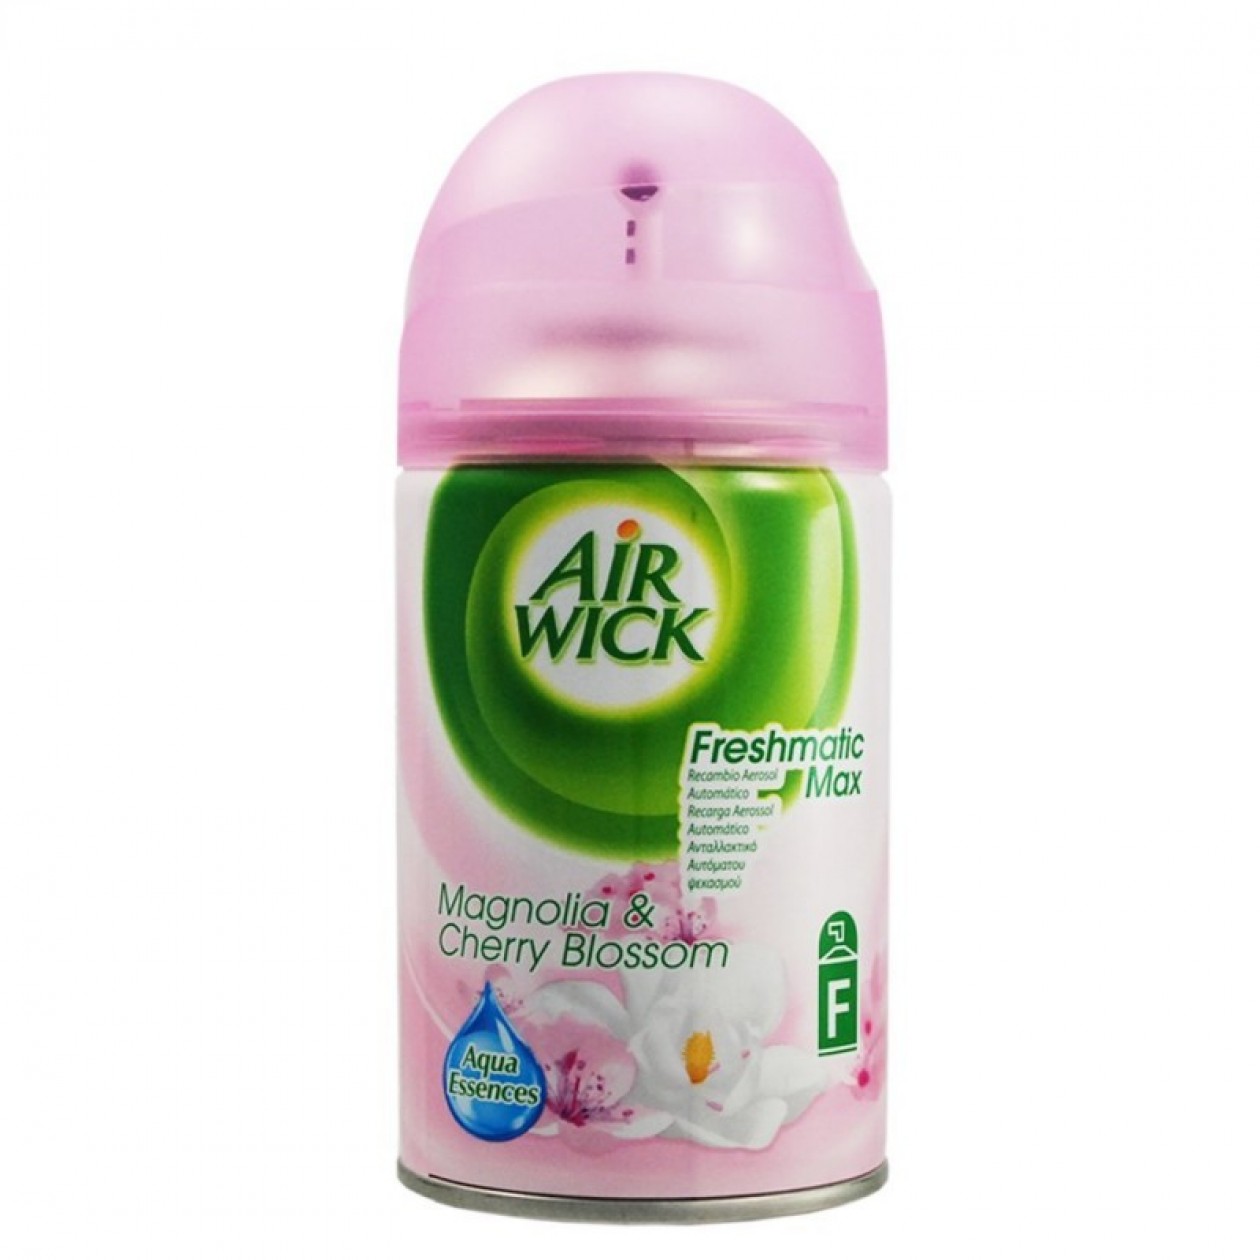 Airwick Freshmatic Max Automatic Spray 250ml Magnolia & Cherry Blossom